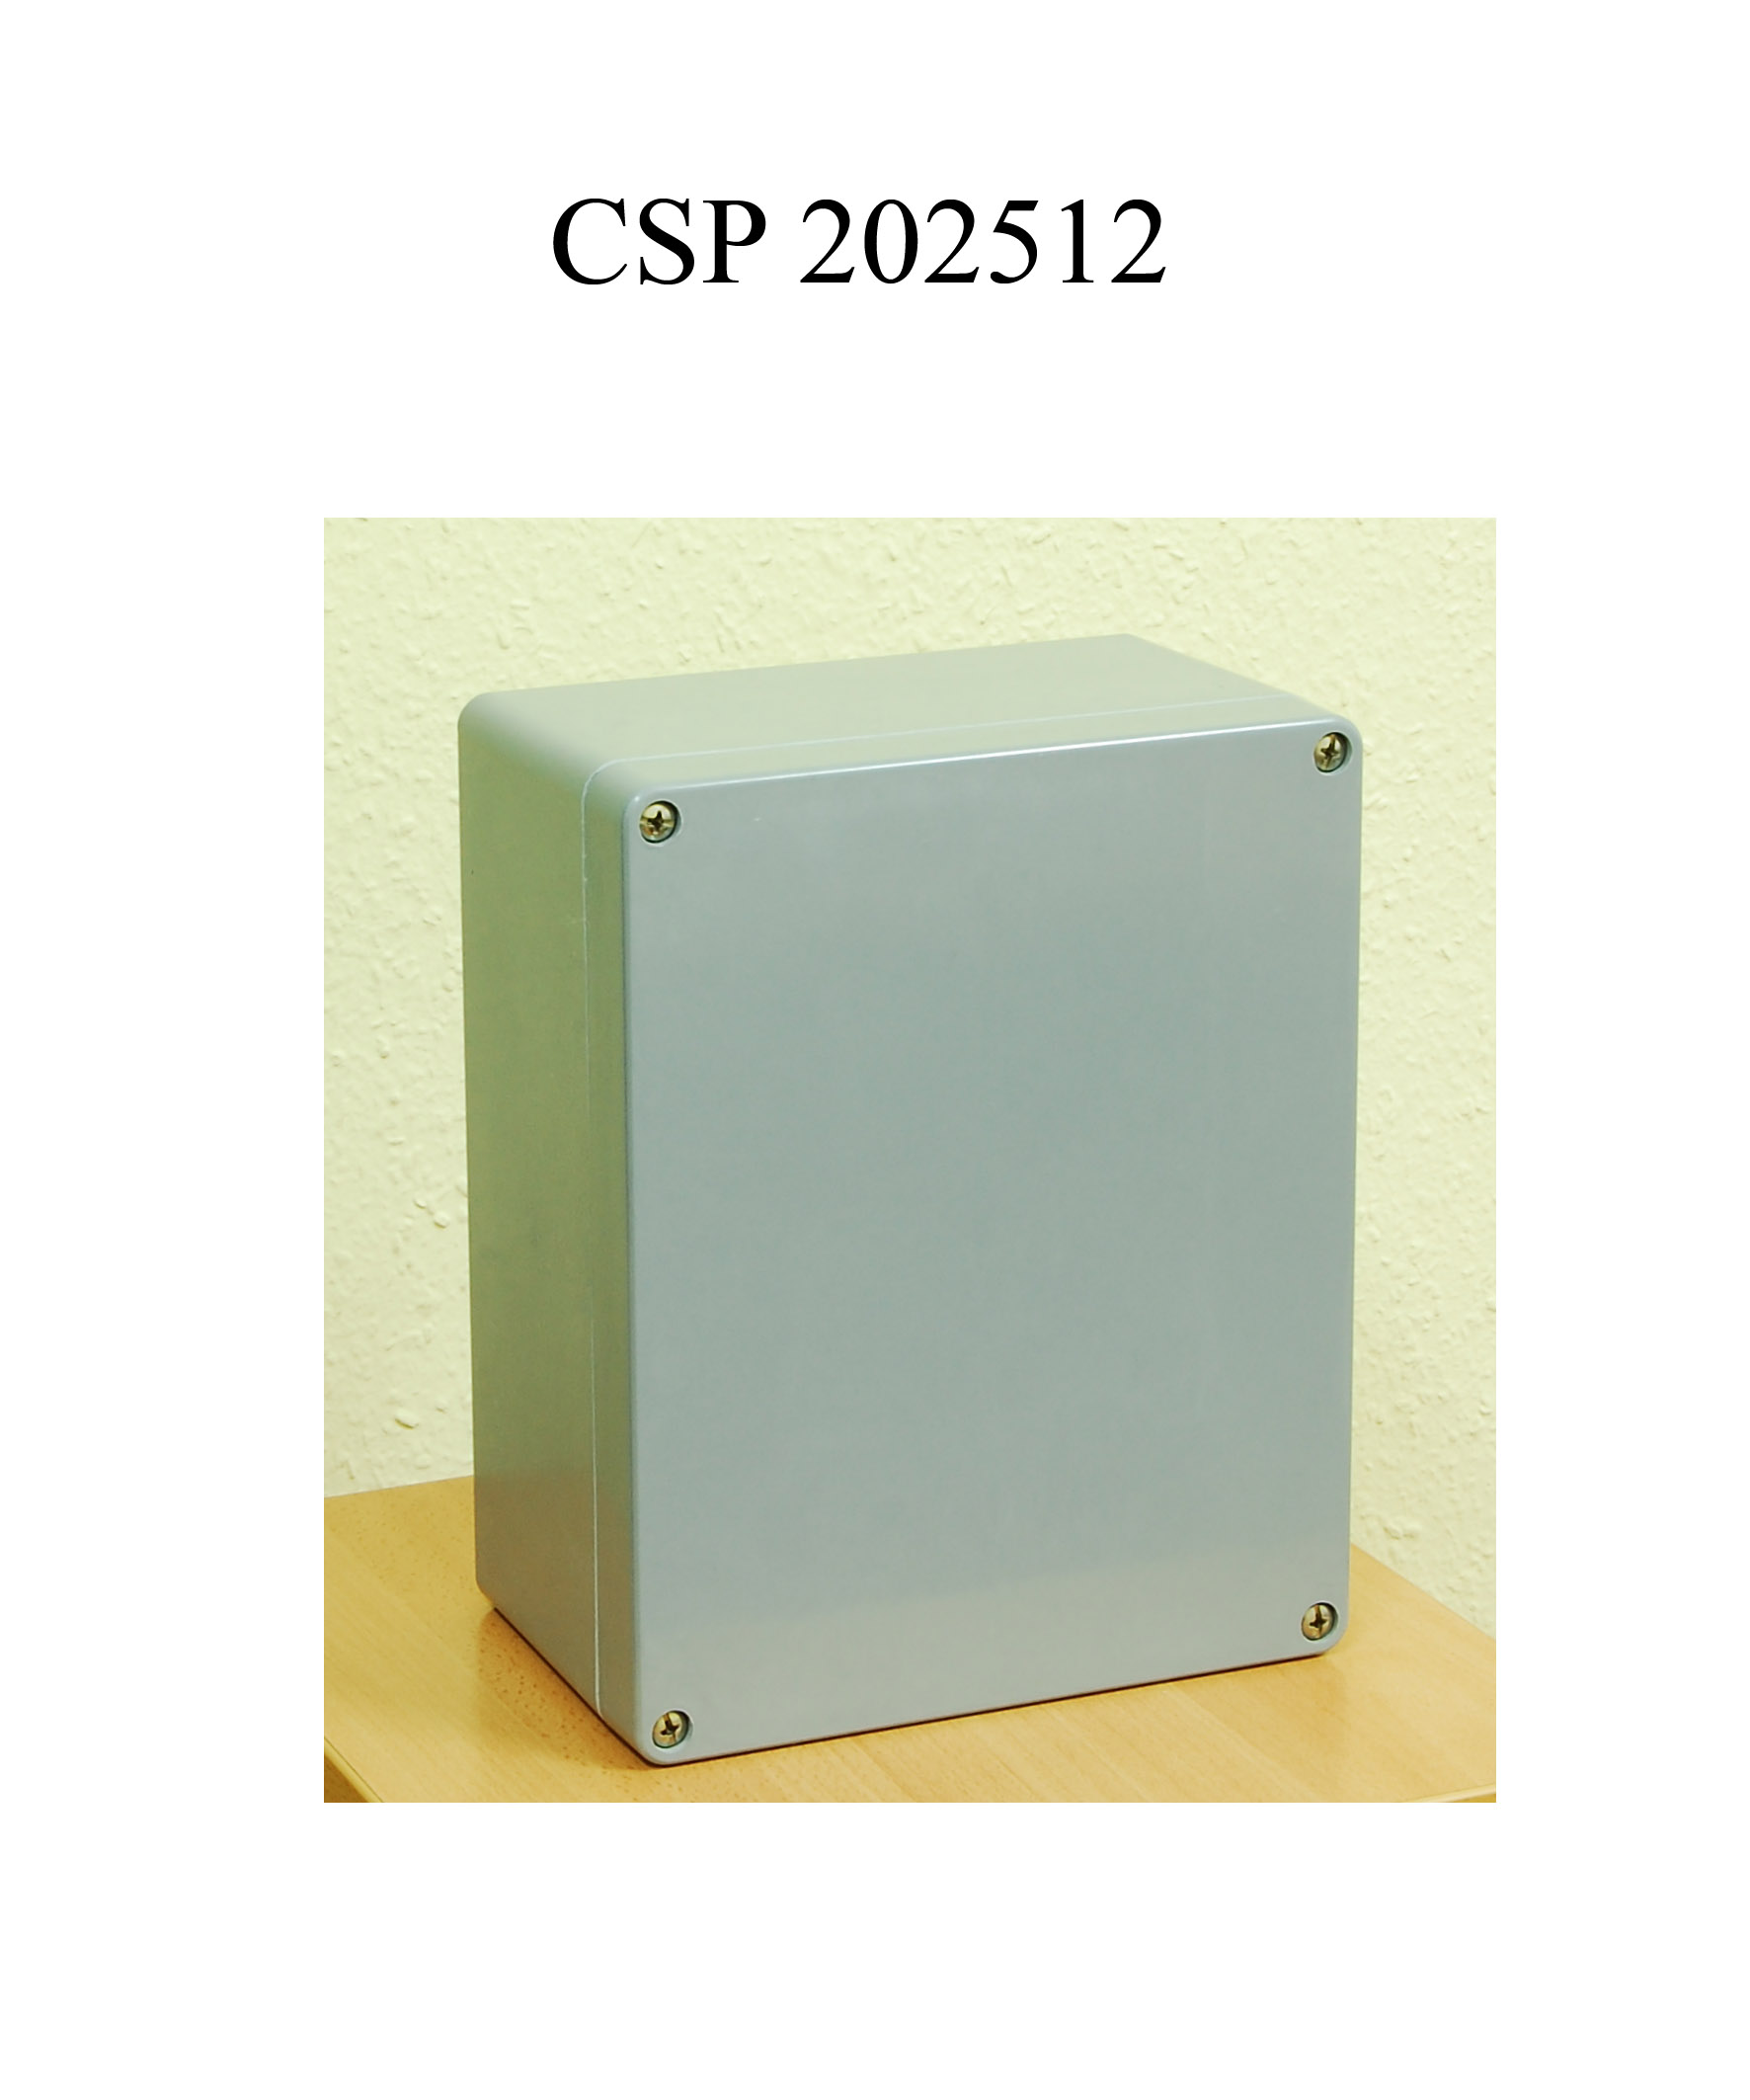 CSPA 202512 poliészter doboz, alaplappal